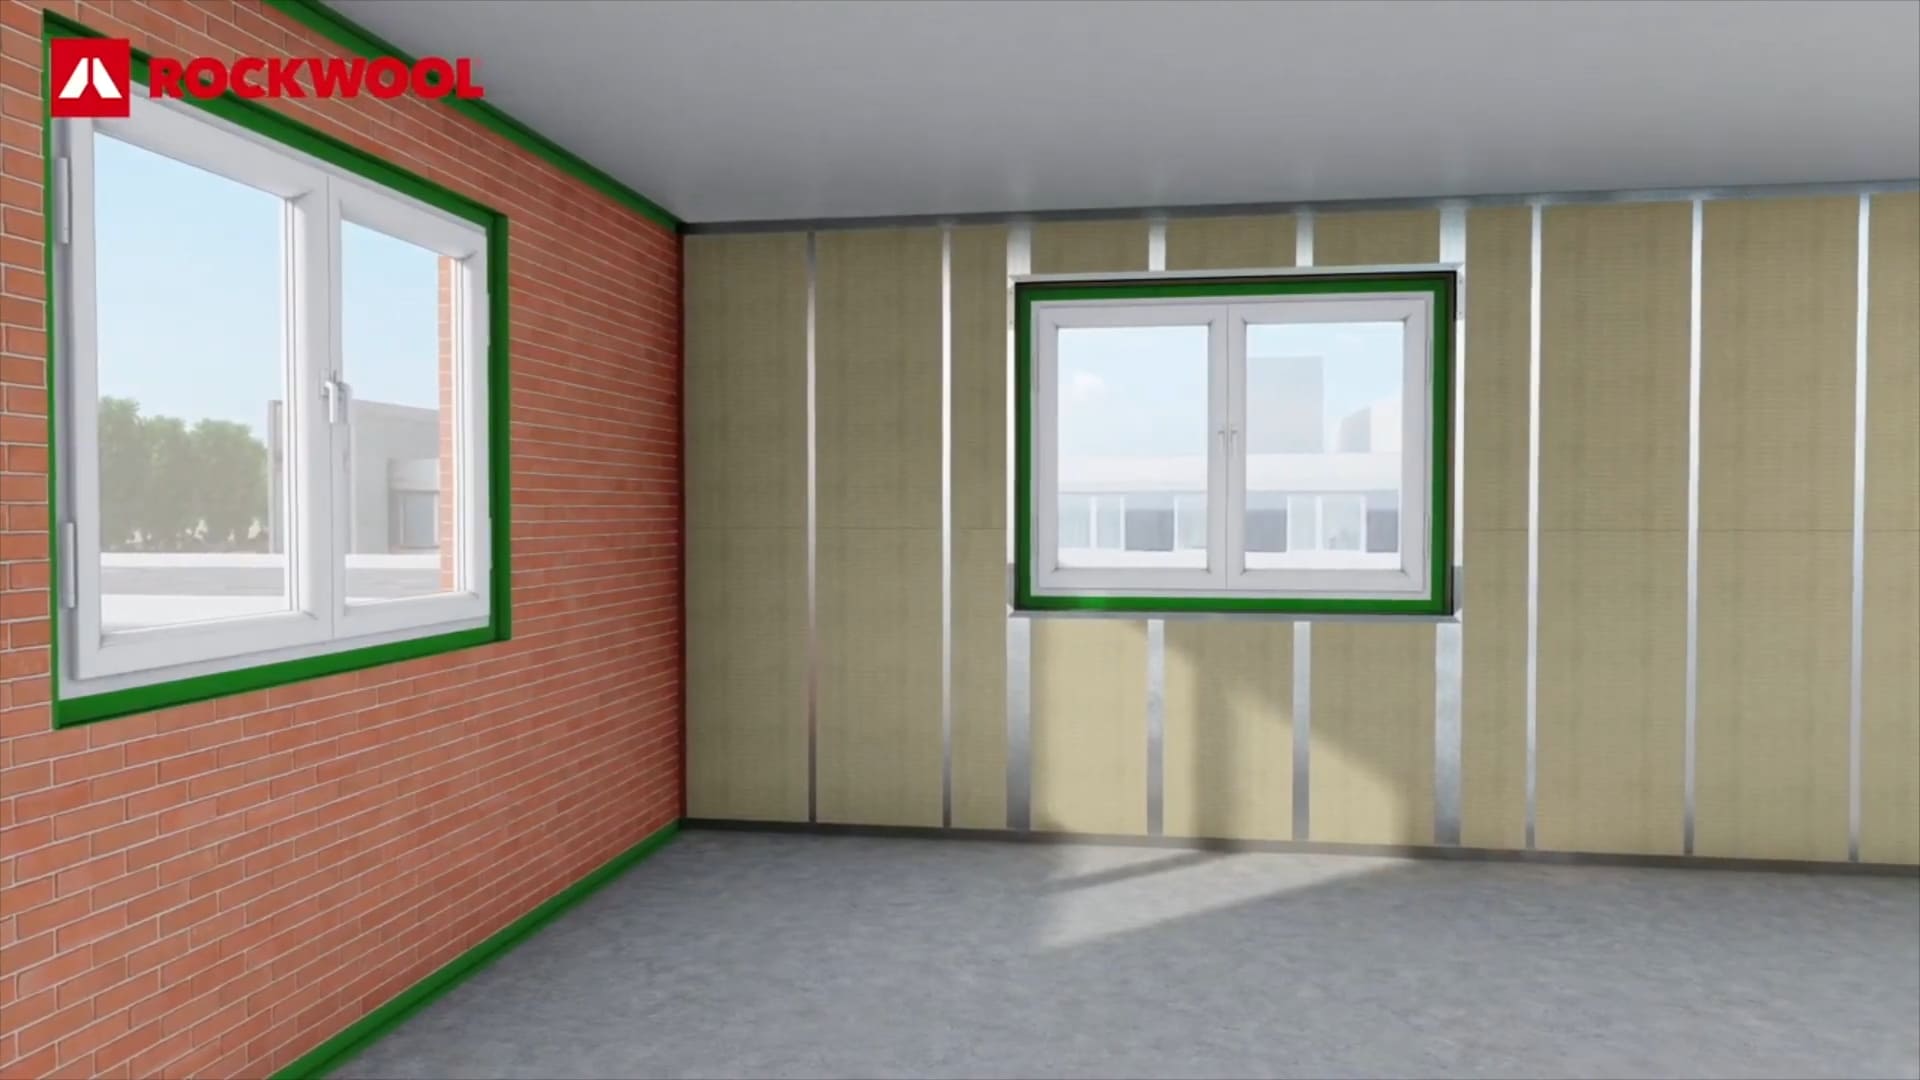 Ventajas de usar el sistema REDDry para el aislamiento de fachadas | BdB + Rockwool